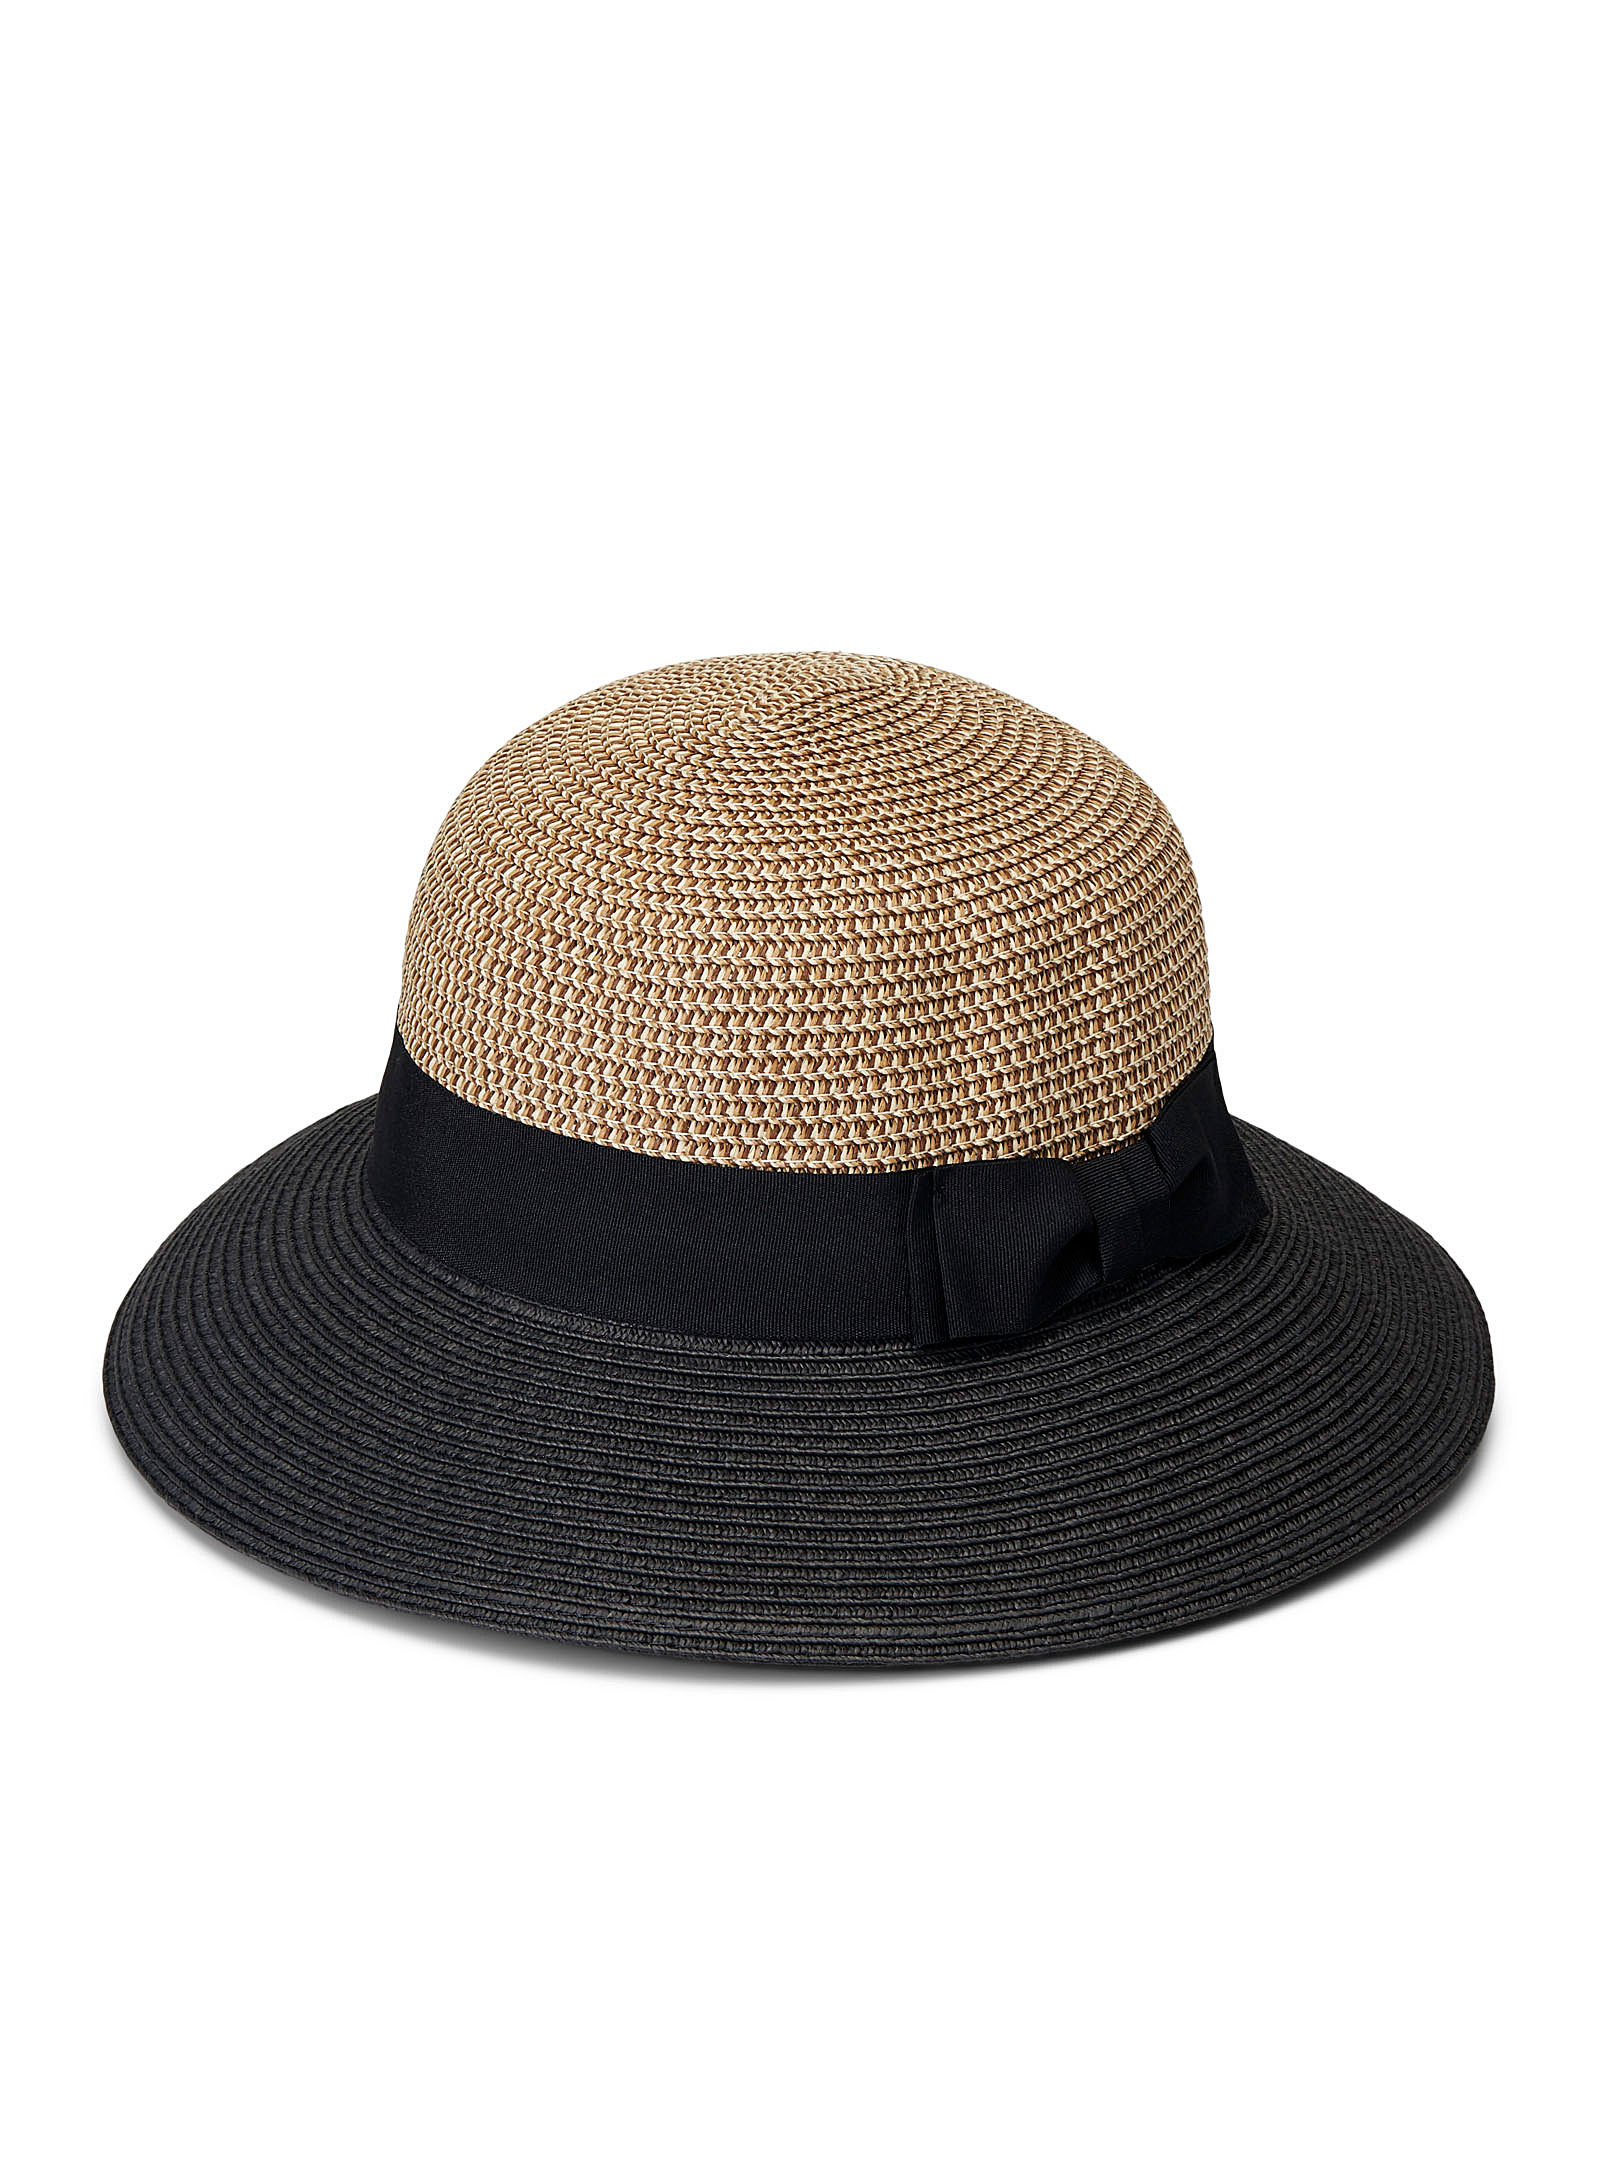 Parkhurst - Women's Two-tone cloche hat